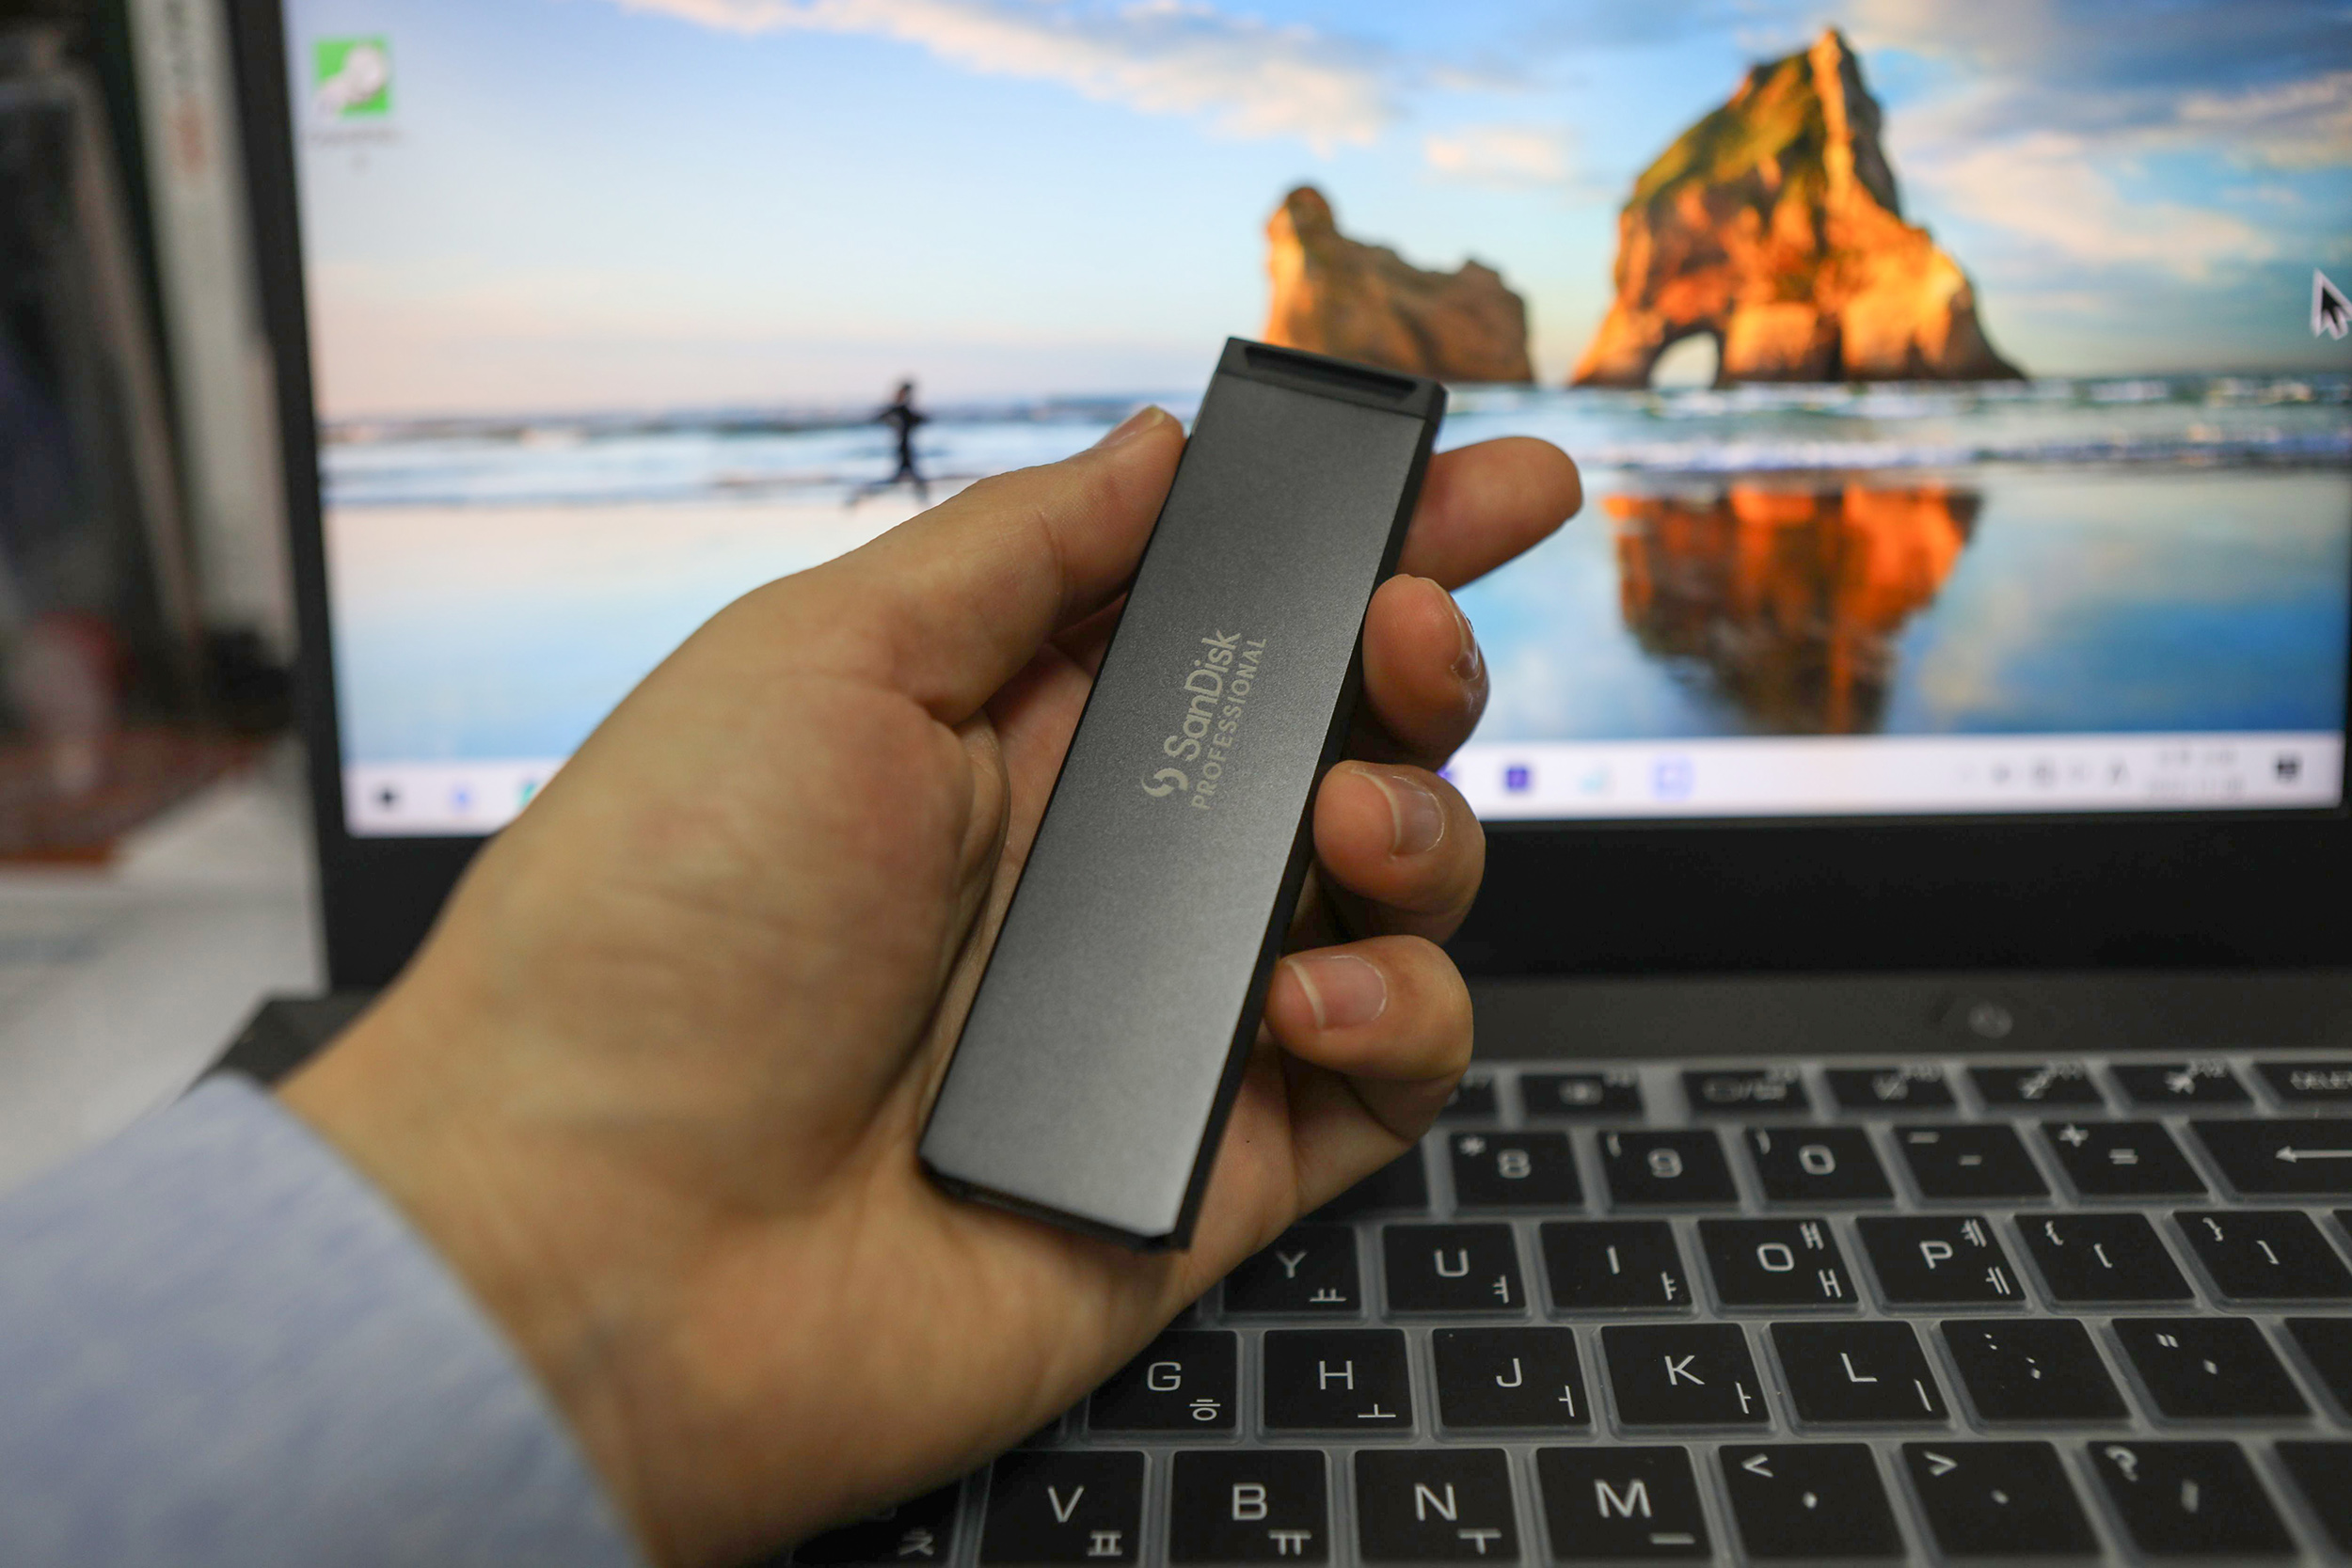 프로 블레이드 SSD 맥은 최대 4TB까지 지원함에도 가로 세로, 길이가 약 3cm, 10cm에 불과해촬영 현장에서 들고 다니기에 부담이 없다.